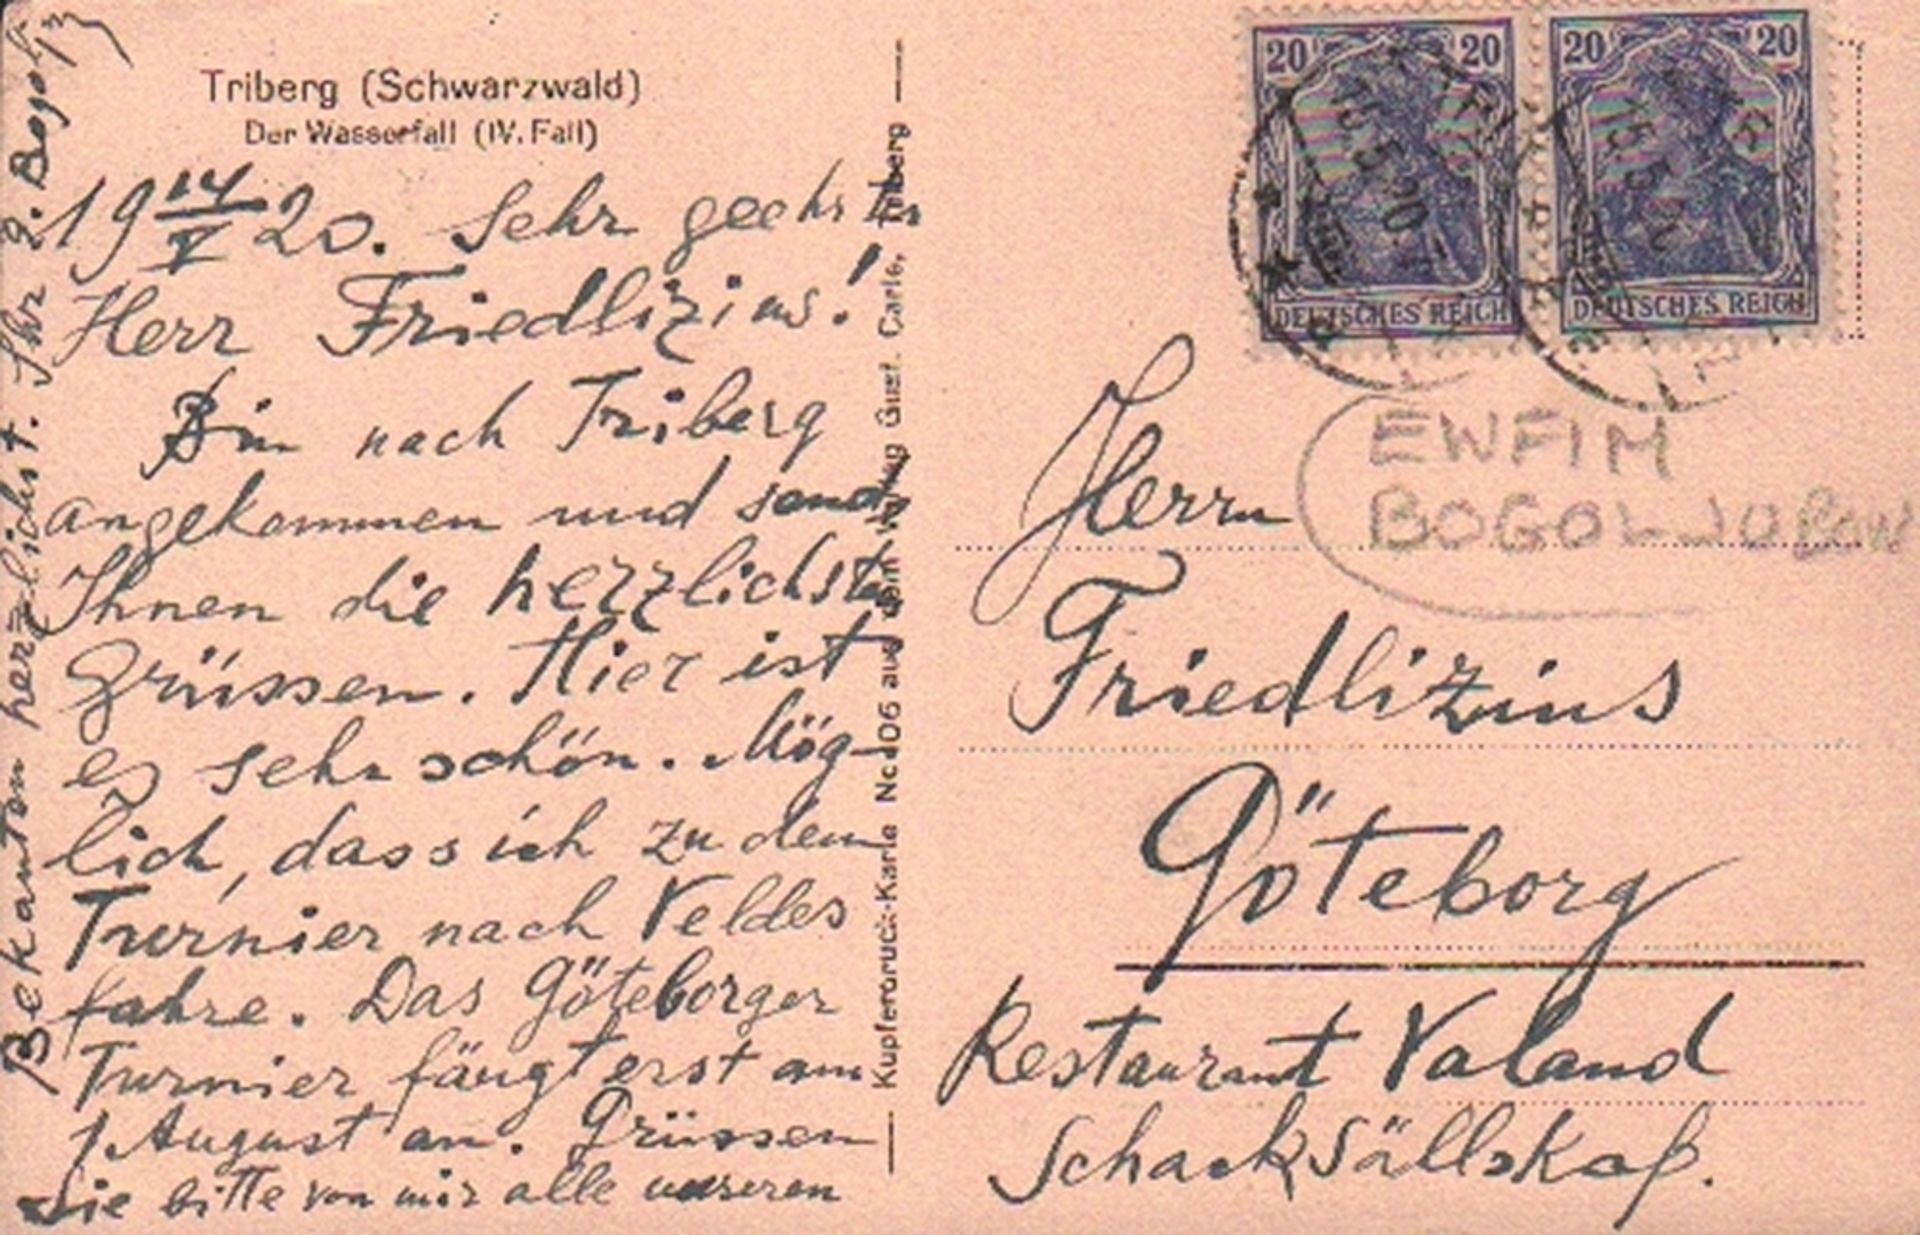 Bogoljubow, Efim. Postalisch gelaufene Postkarte mit eigenhändig von Bolgoljubow geschriebenem